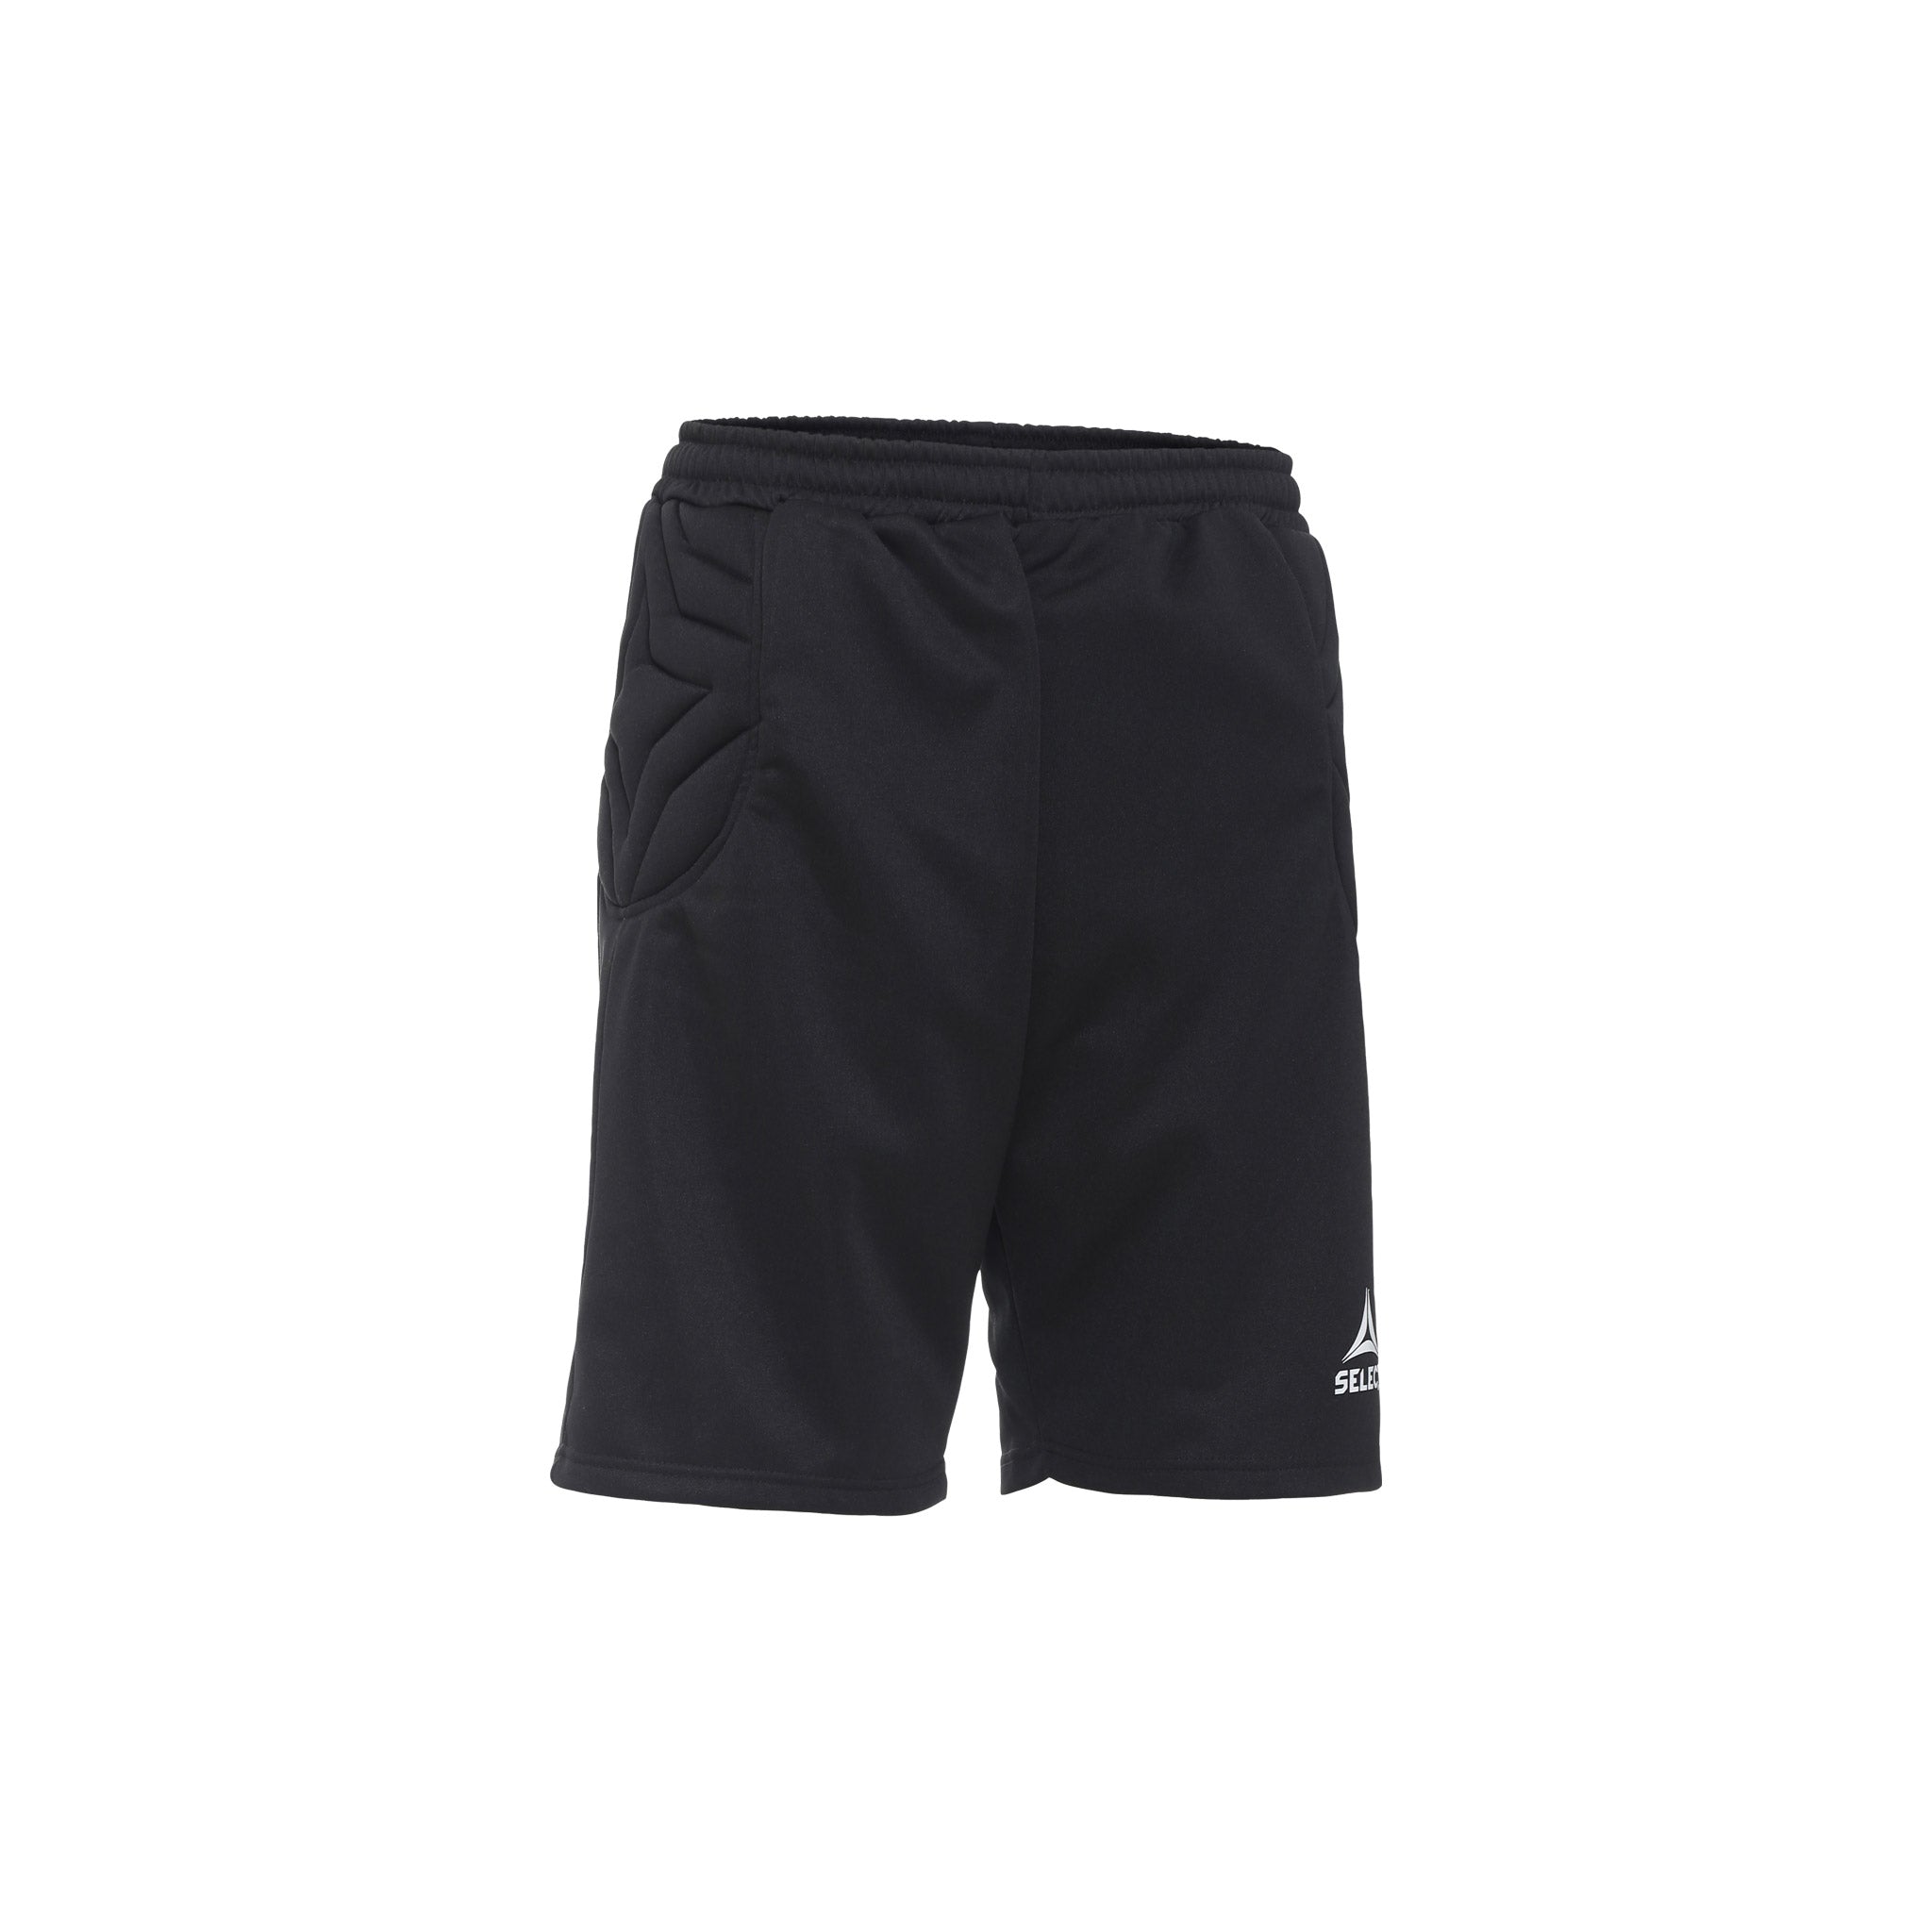 Black goalkeeper shorts #color_black